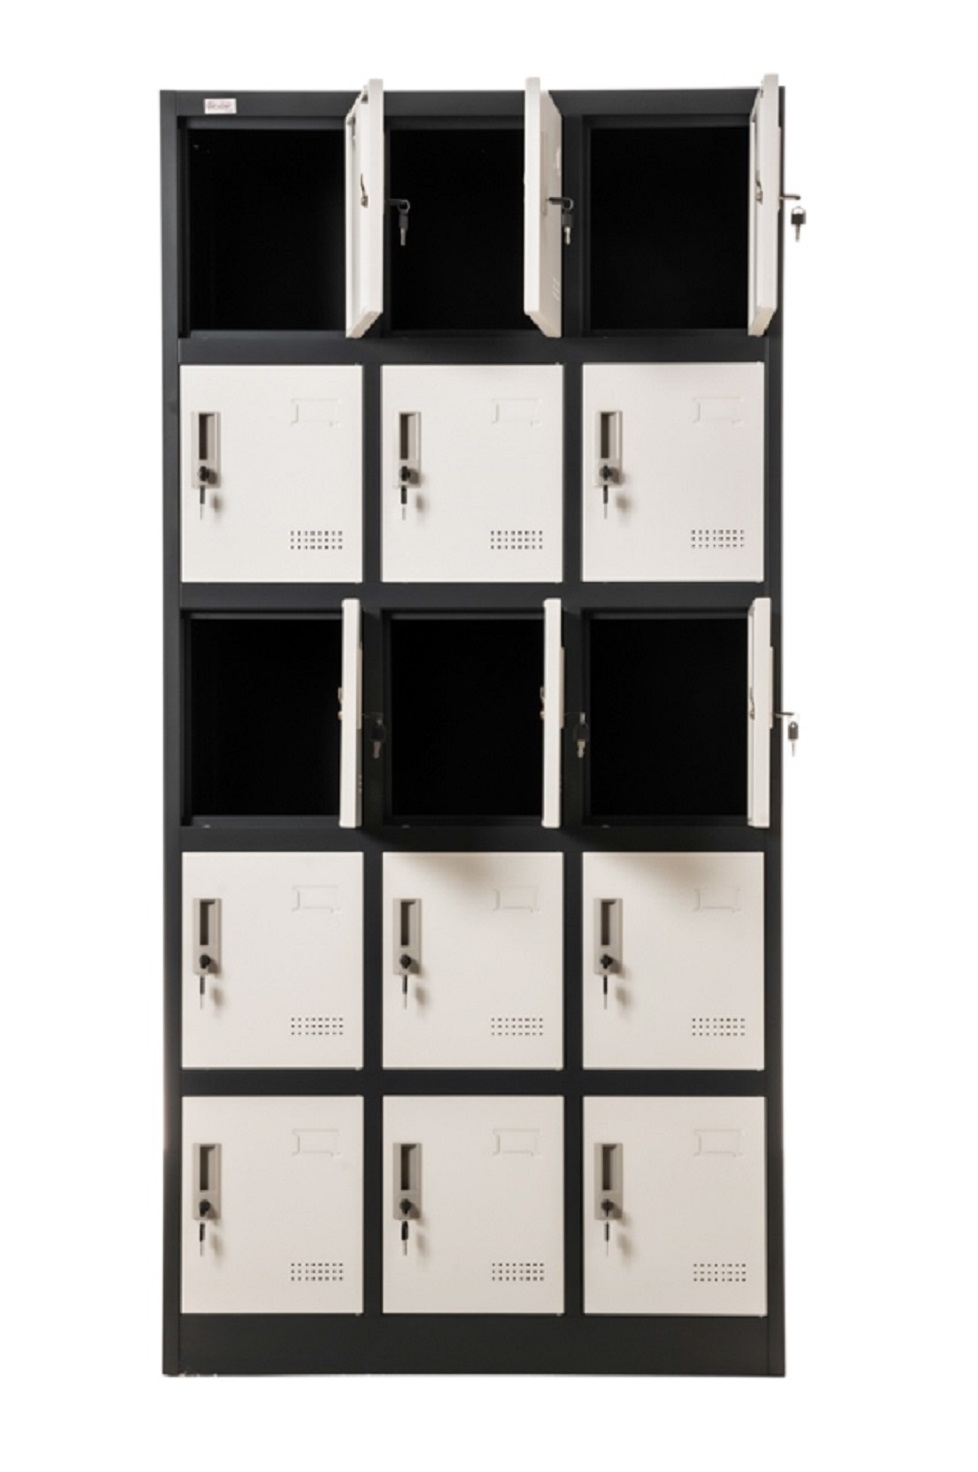 Steel Office-Cabinet BUDAPEST locker 1door dark grey-white